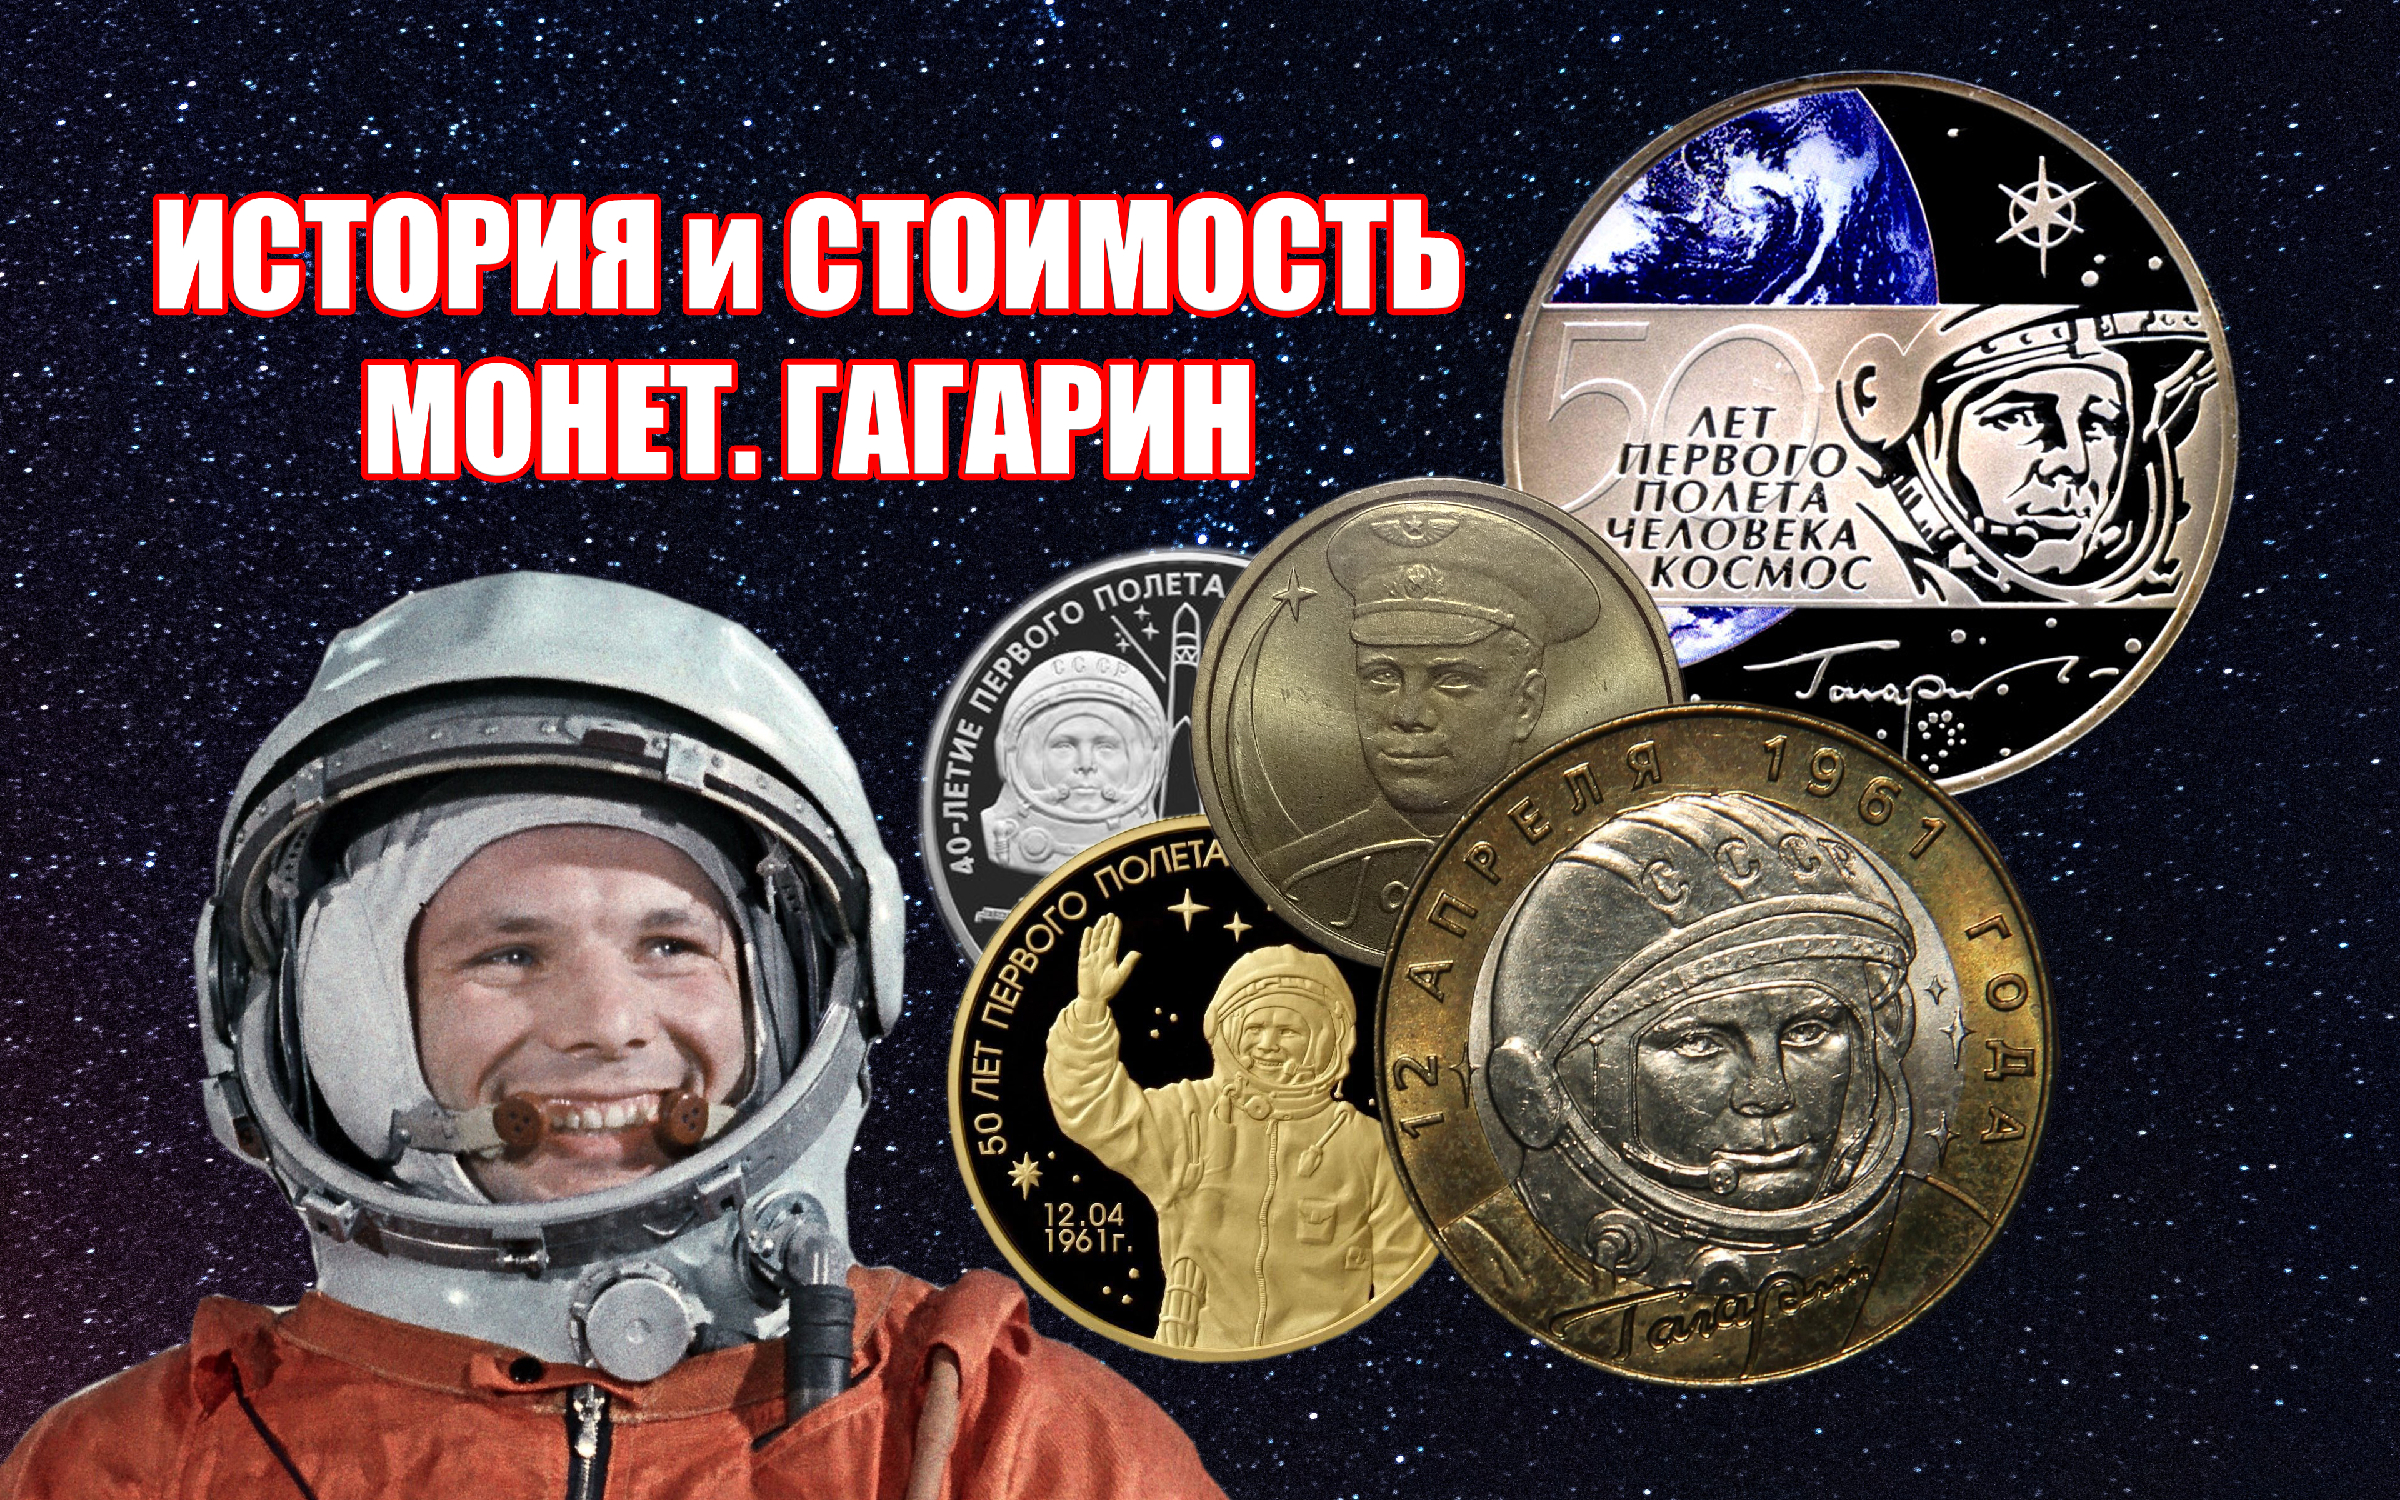 Первый полет человека в космос в монетах. Монета Гагарин. 12 Апреля день космонавтики.